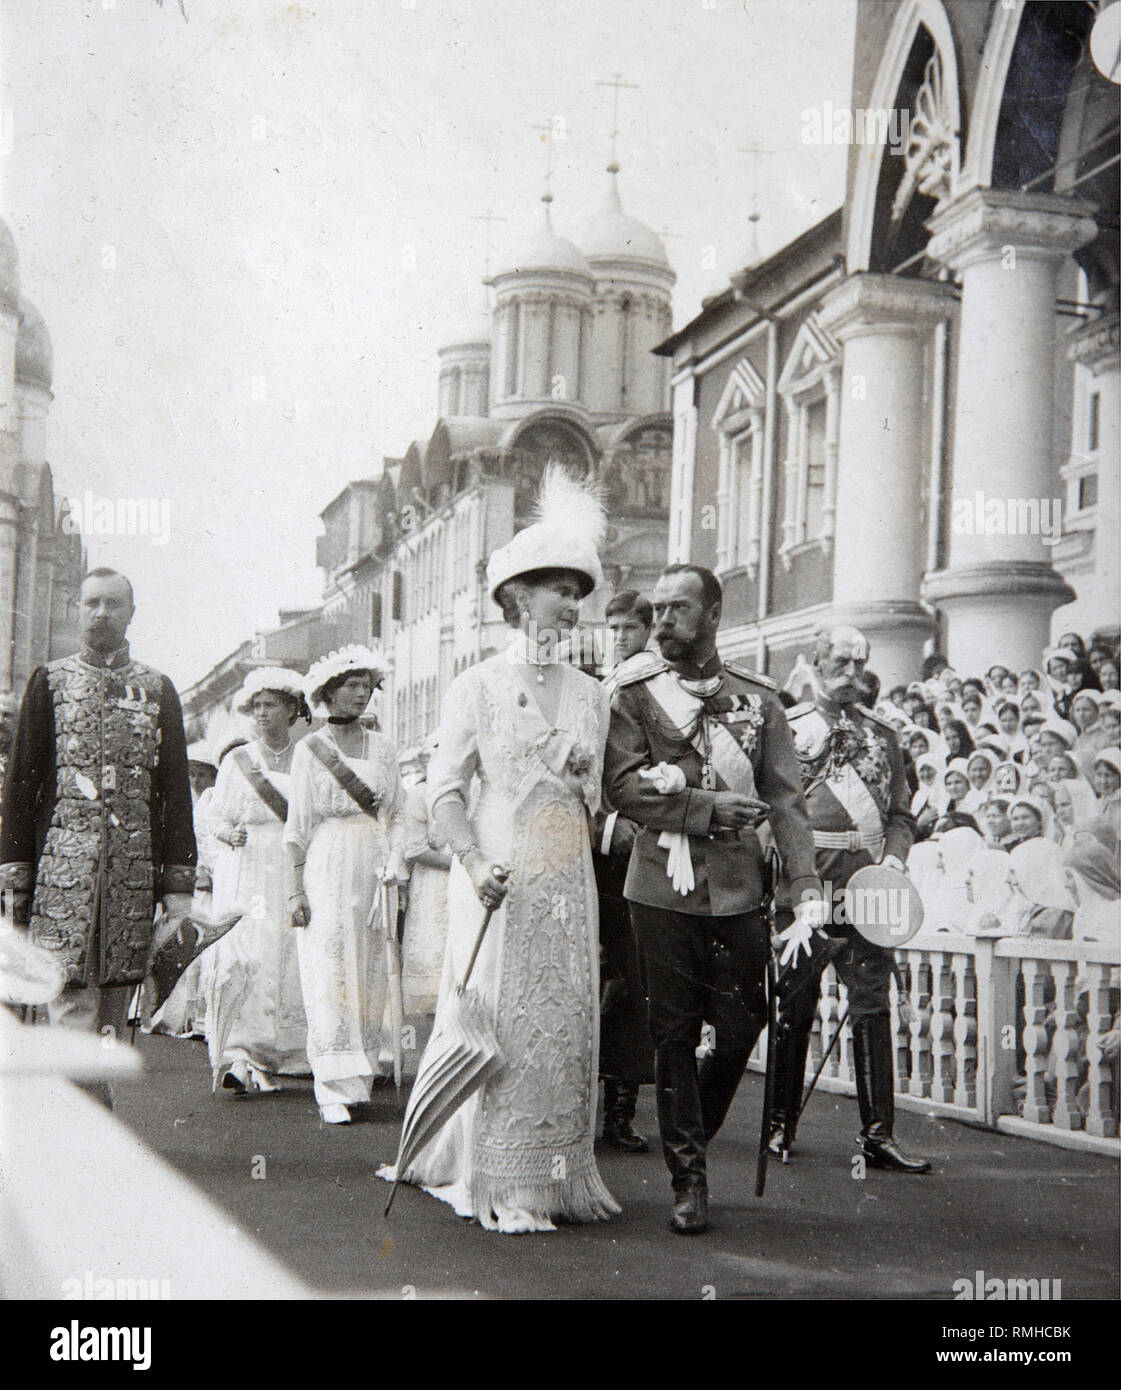 Tsar la famiglia sulla celebrazione del trecentesimo anniversario della Casa di Romanov al Cremlino. Argento Fotografia di gelatina Foto Stock